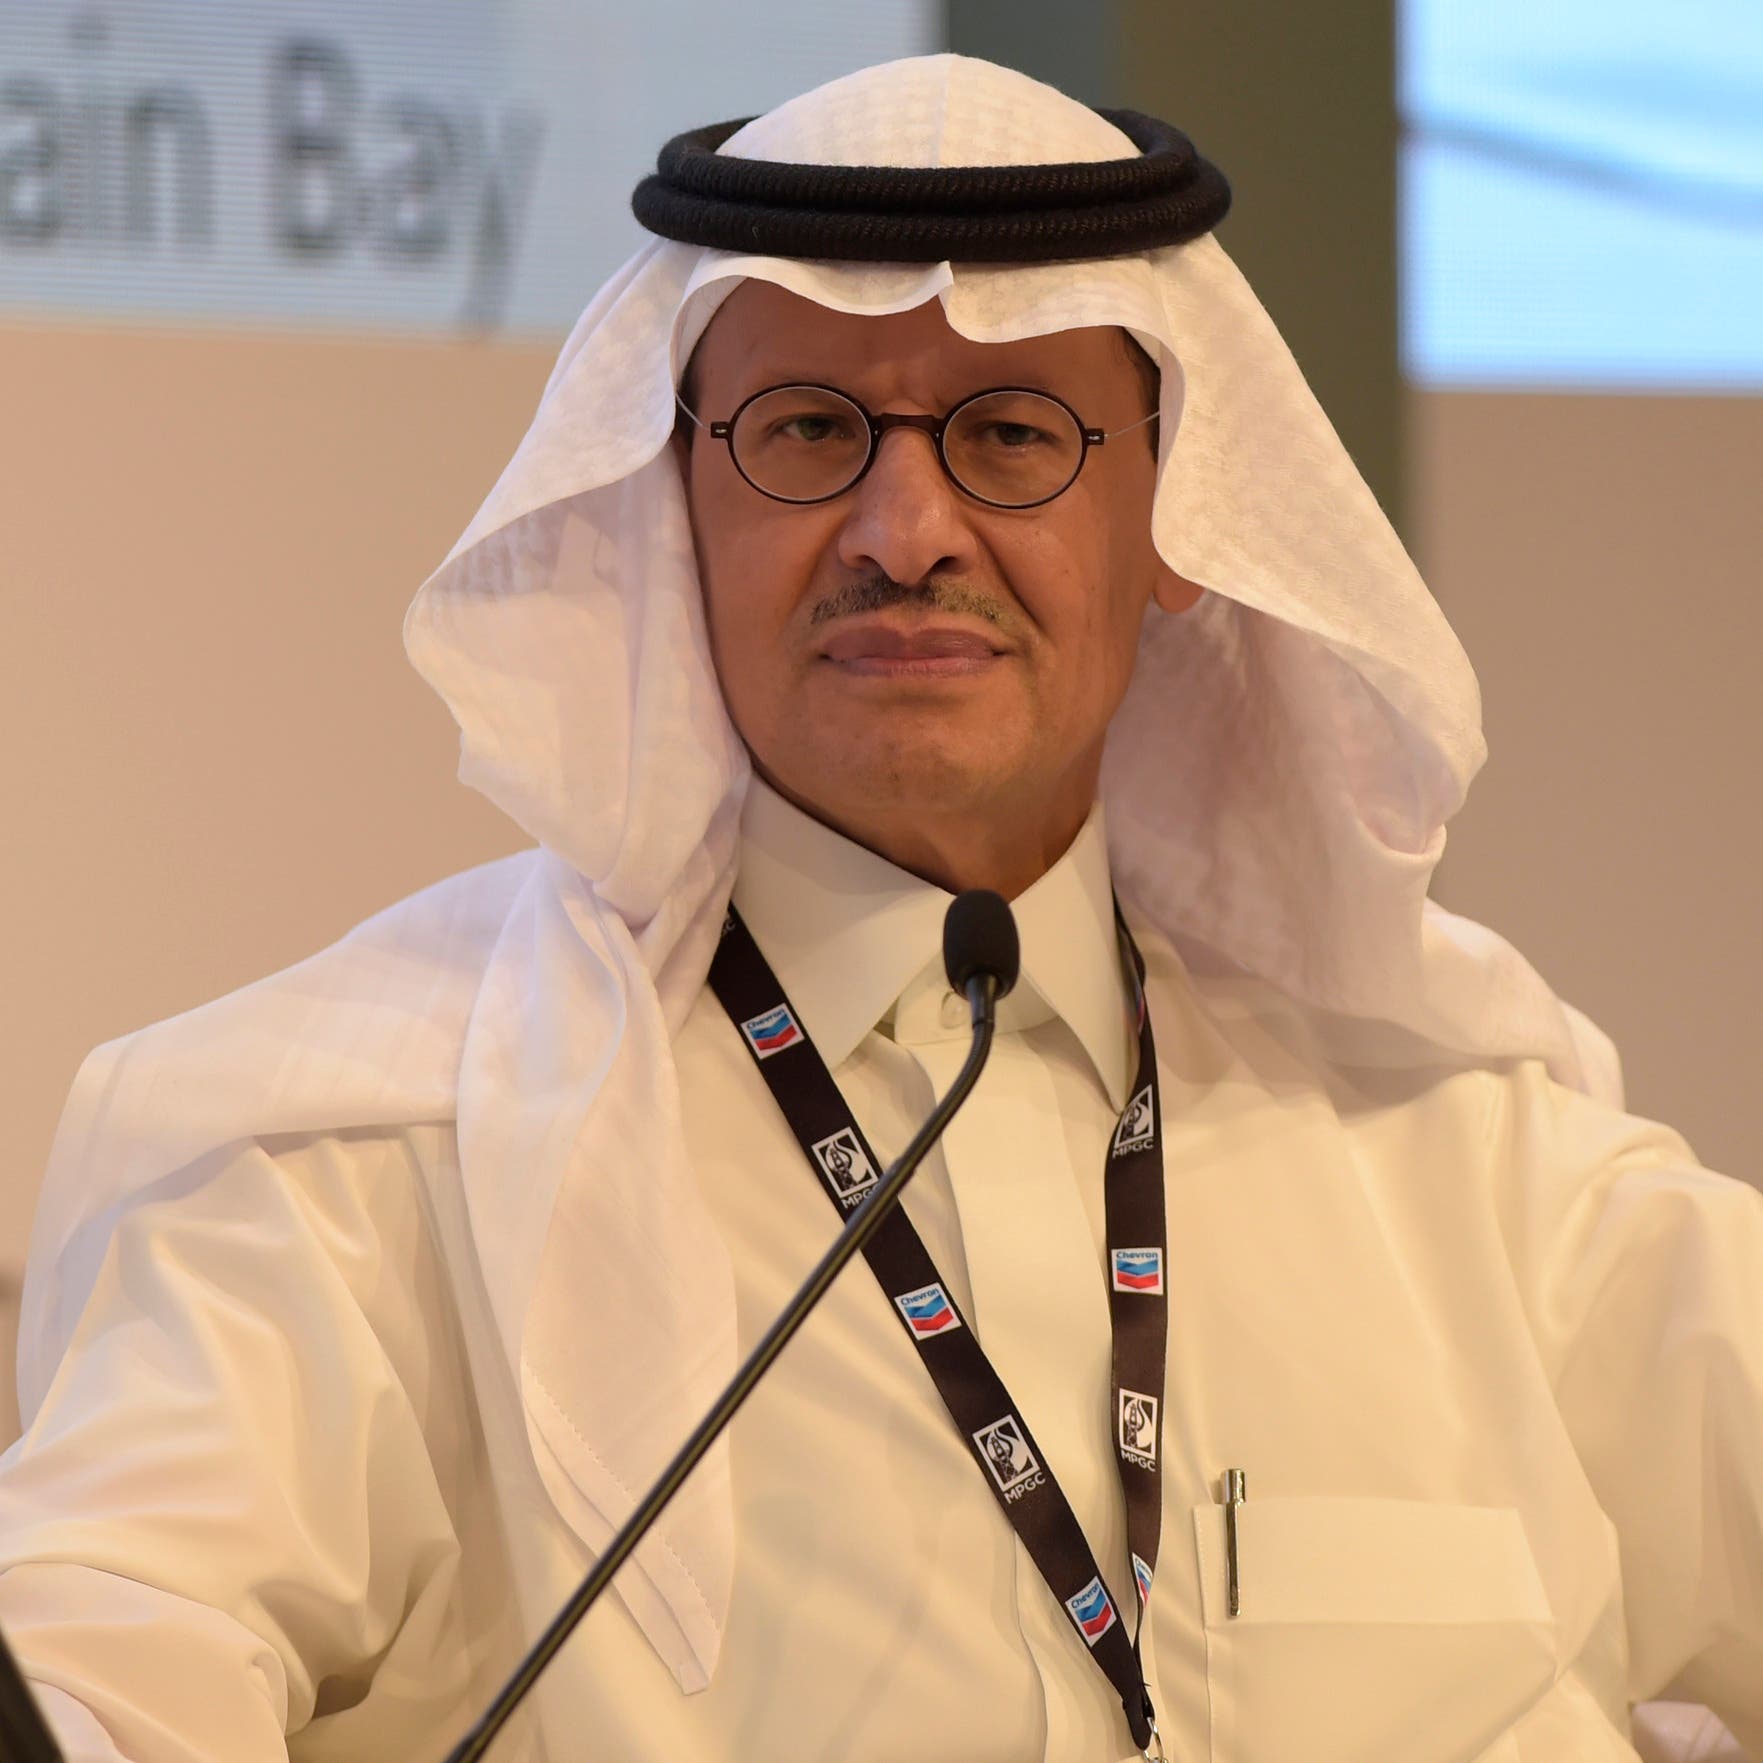  وزير الطاقة السعودي: لدى أوبك بلس وسائل للتعامل مع التحديات بما فيها خفض الإنتاج